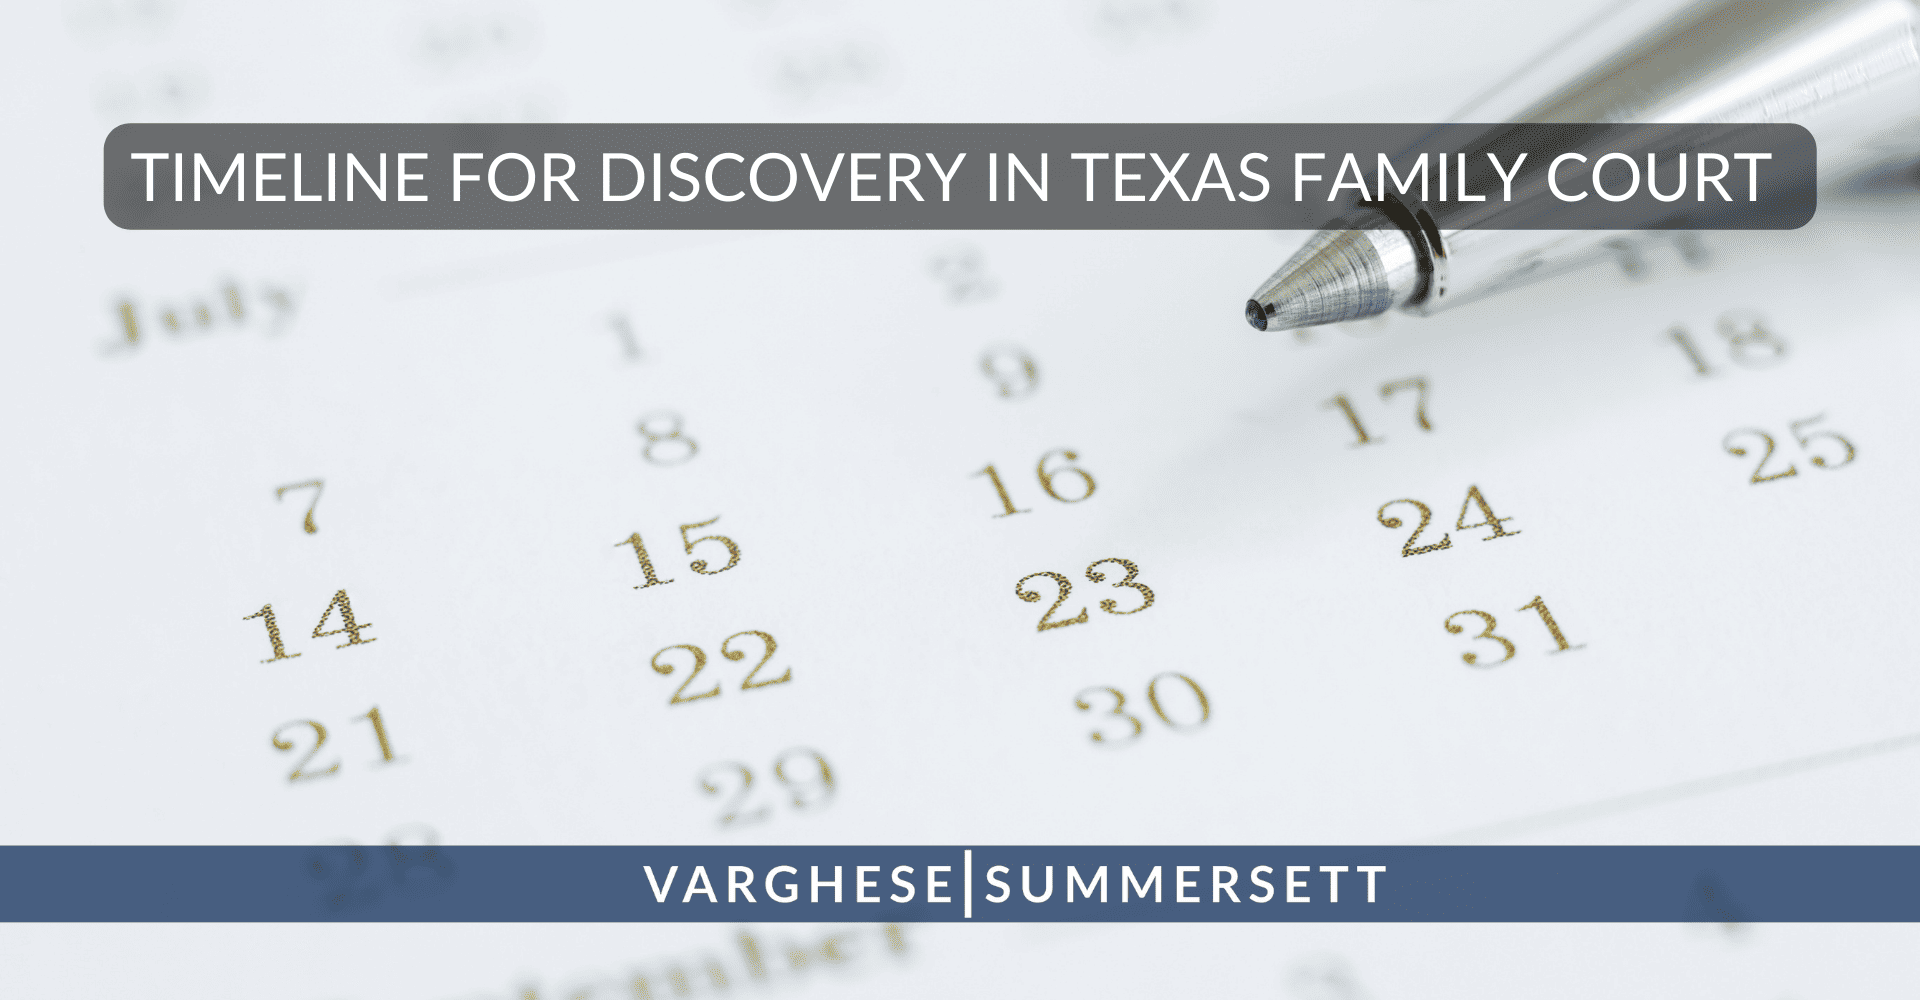 Calendario para la presentación de pruebas en los tribunales de familia de Texas